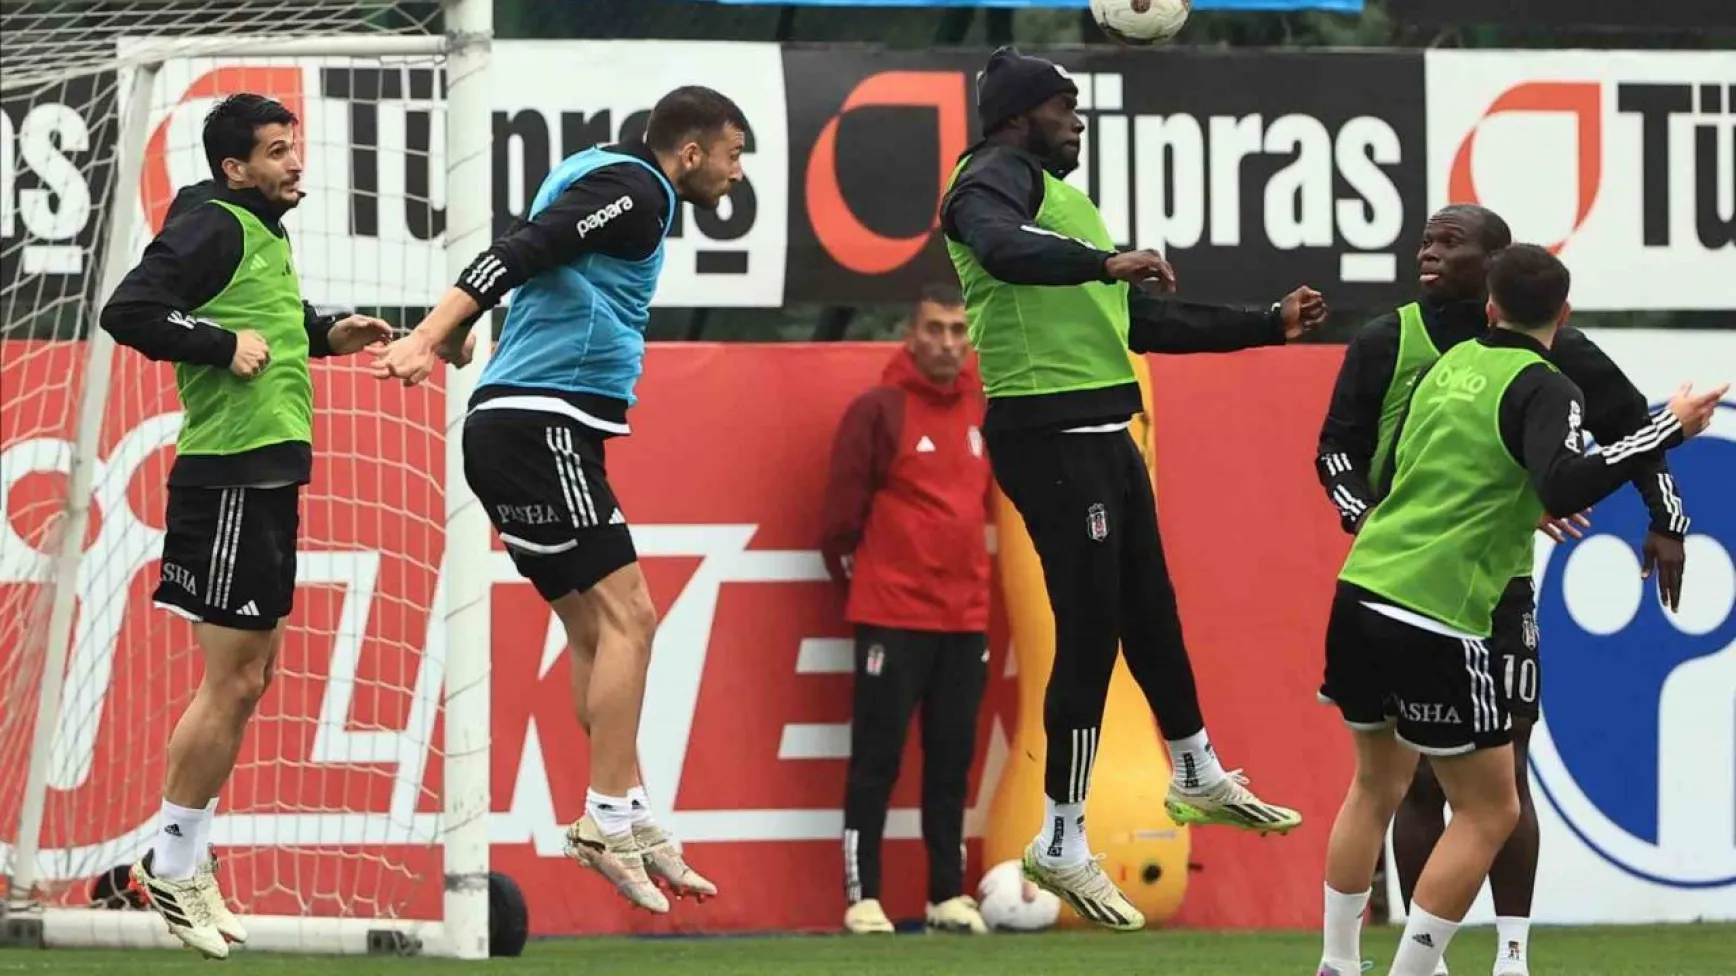 Beşiktaş, Çaykur Rizespor maçı hazırlıklarını tamamladı